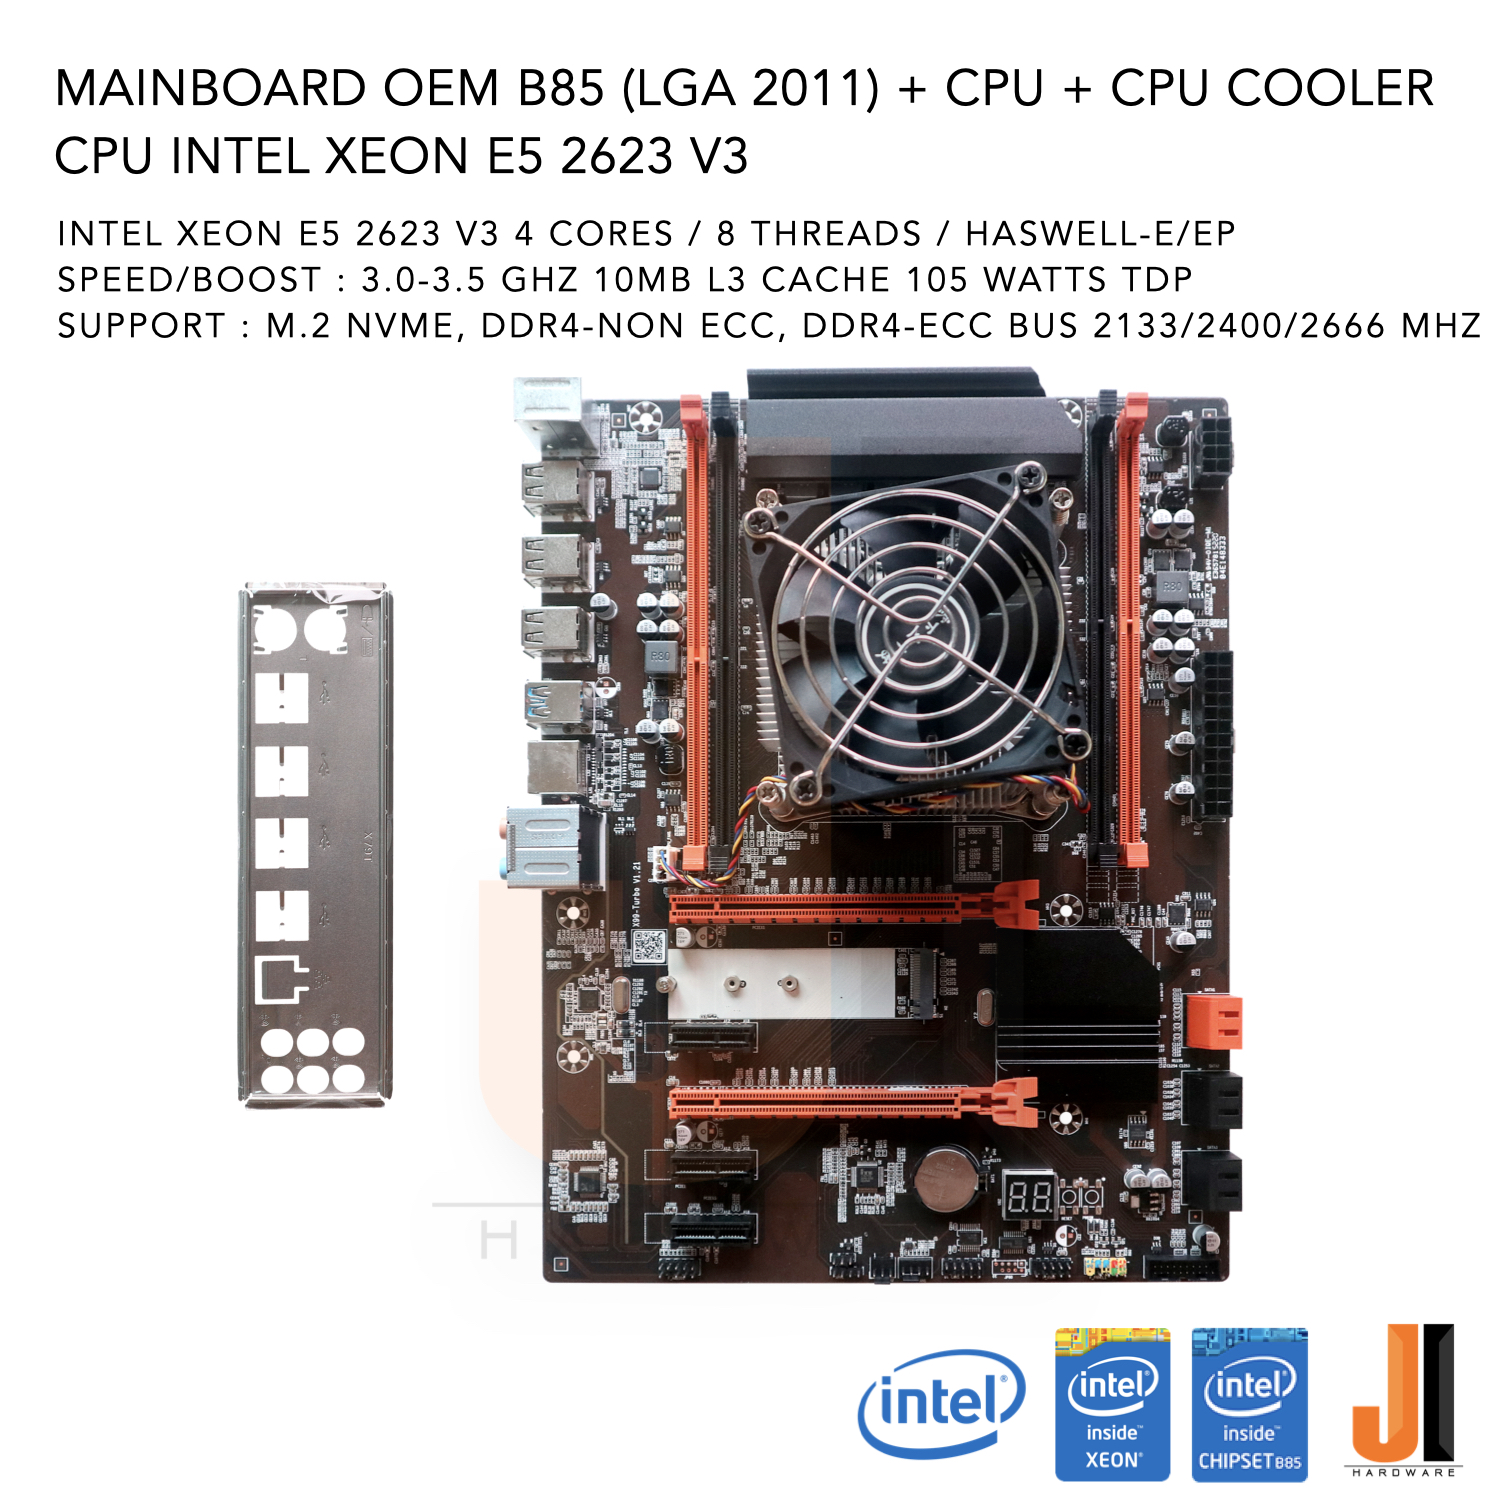 ชุดสุดคุ้ม Mainboard OEM B85 (LGA 2011) + Intel Xeon E5 2623 V3 With CPU Cooler 3.0-3.5 GHz 4 Cores/ 8 Threads 105 Watts (สินค้าใหม่สภาพดีมีฝาหลังมีการรับประกัน)